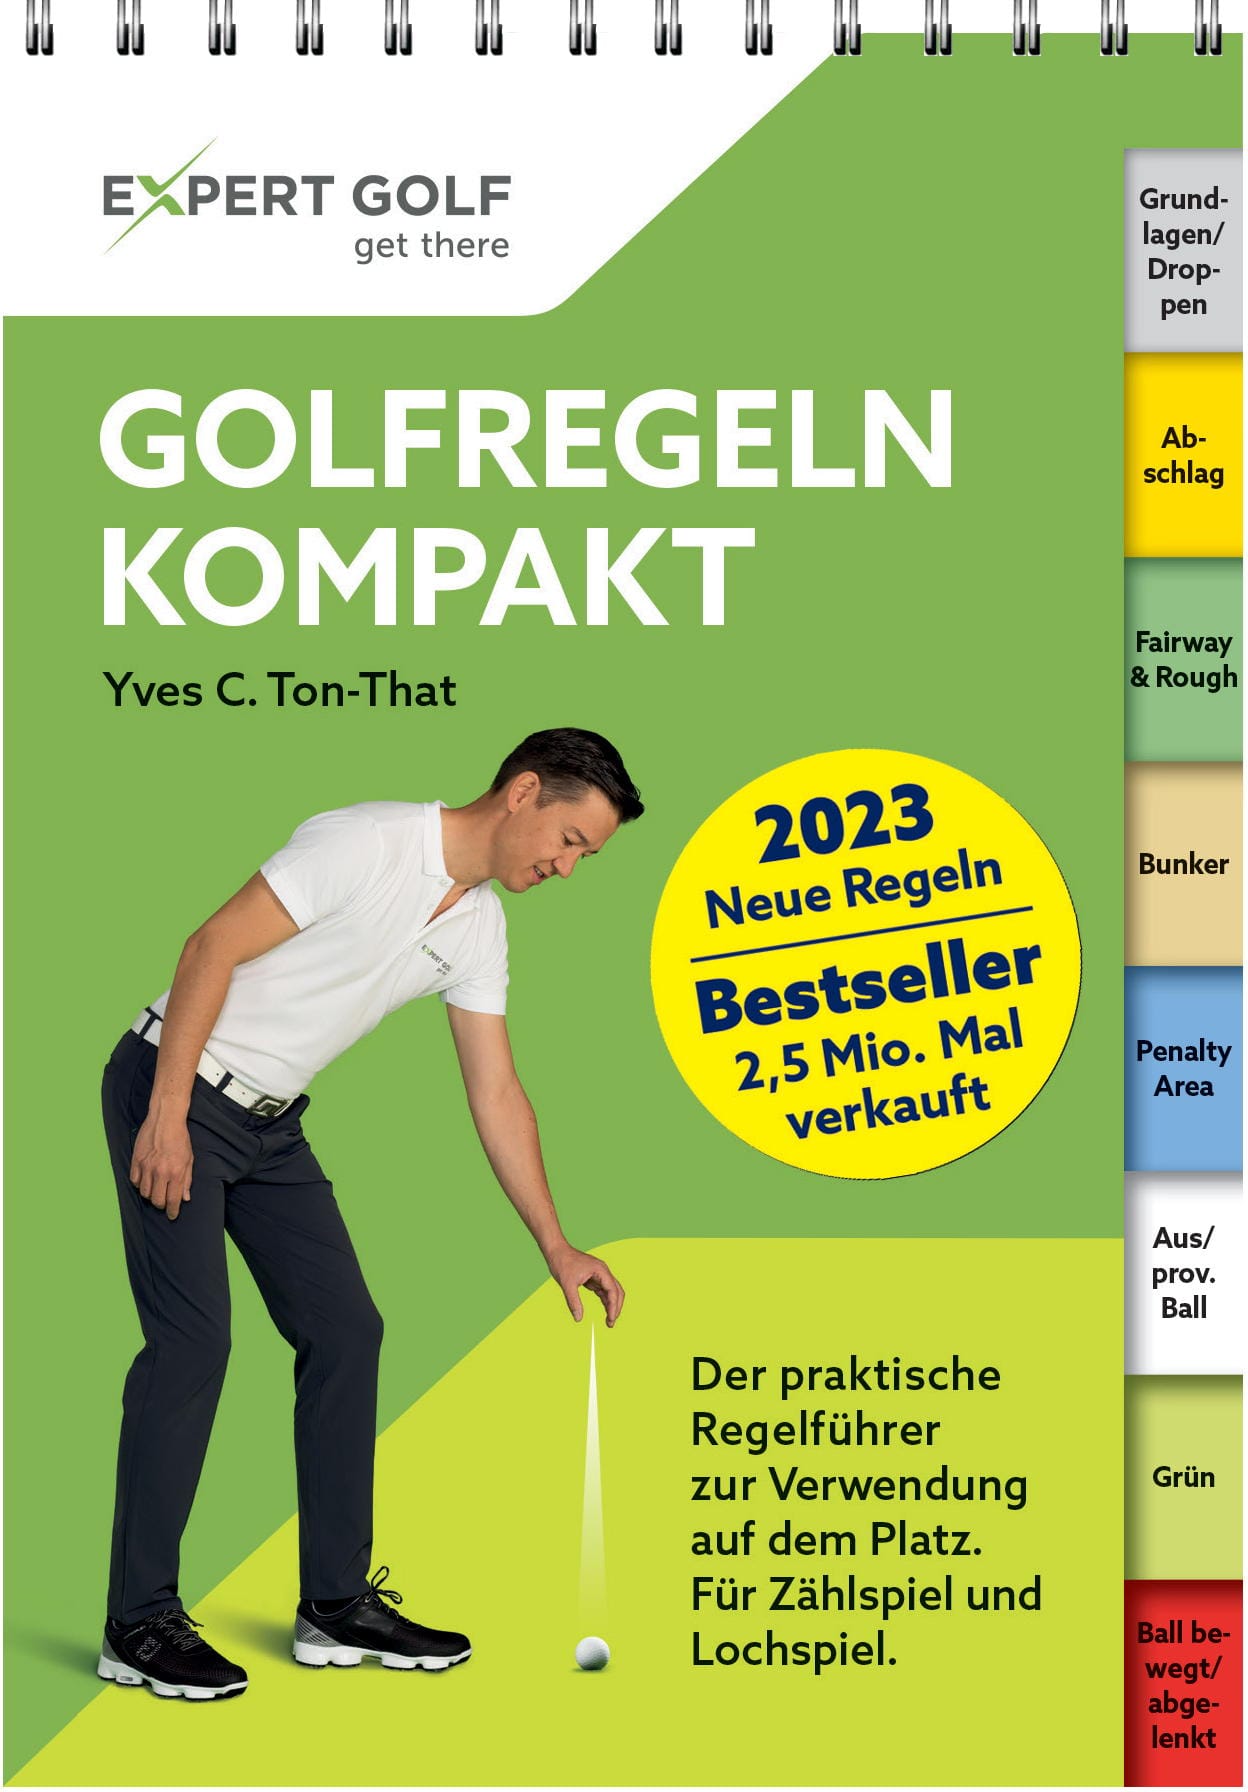 par71 Golfregeln kompakt 2023-2026